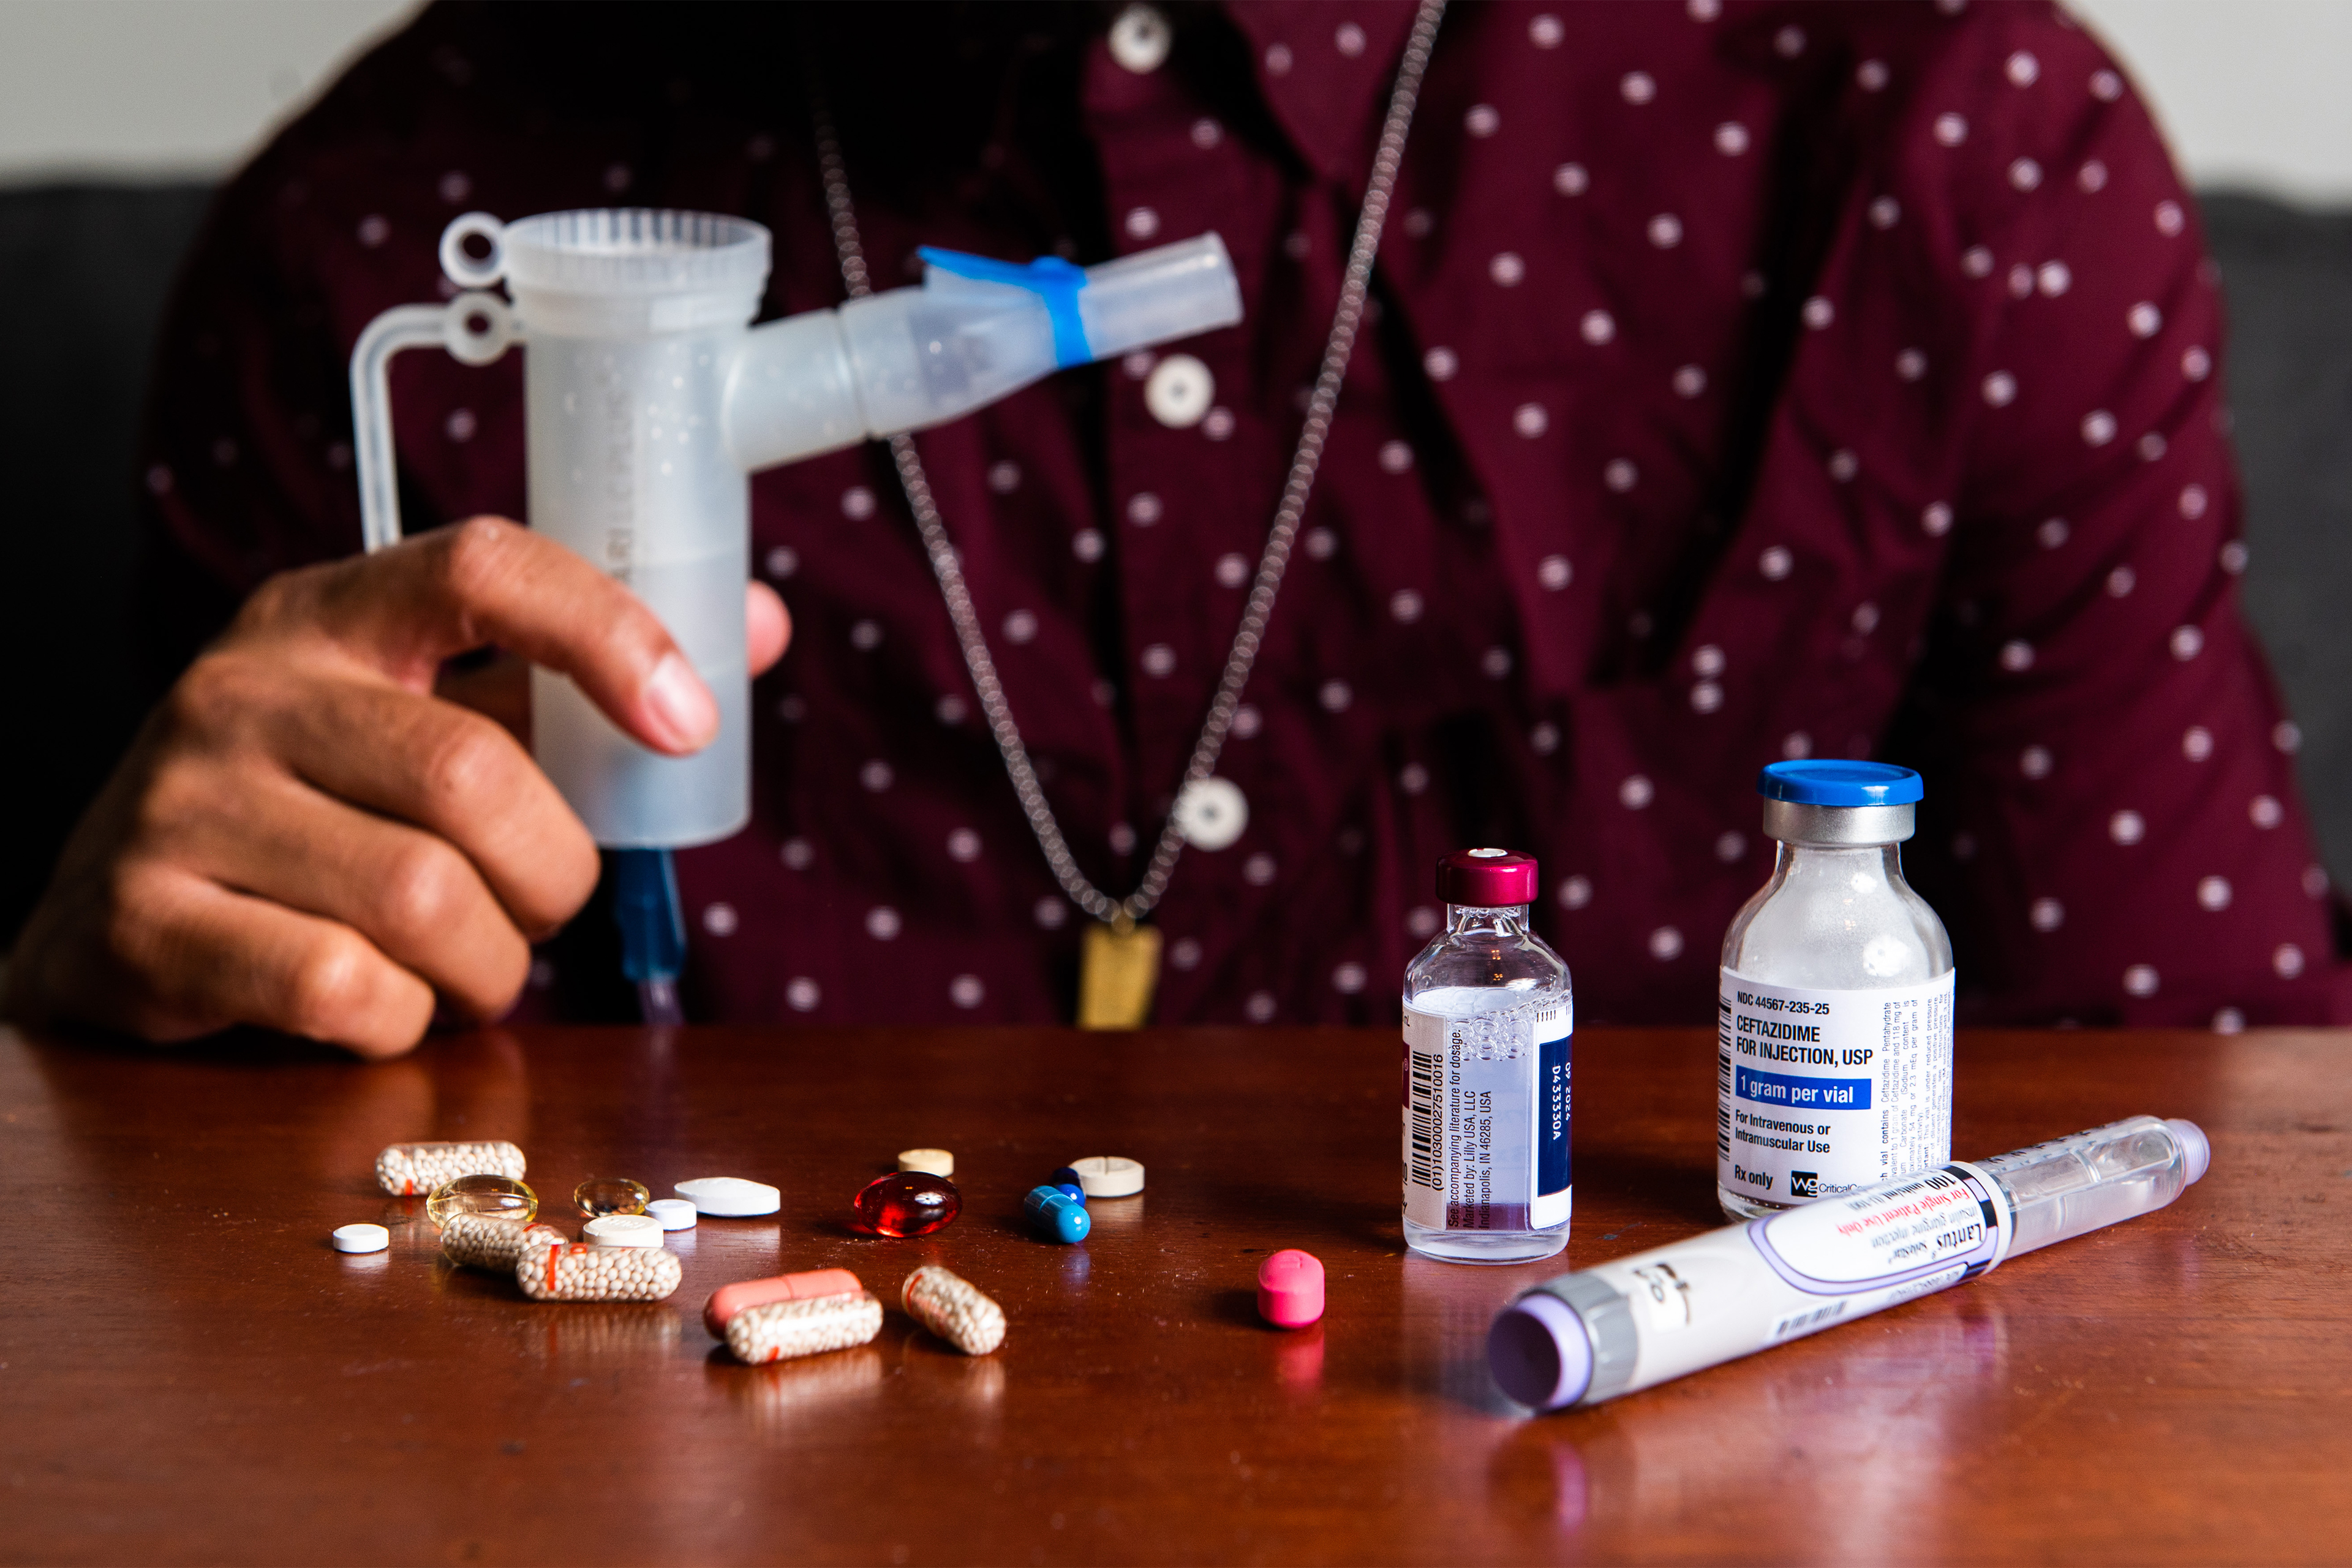 یک نمای نزدیک، دست راست نیکلاس کلی را نشان می‌دهد که یک دستگاه اتومایزر با مجموعه‌ای از قرص‌ها و ویال‌های دارویی را روی میزی در مقابل او نگه داشته است.